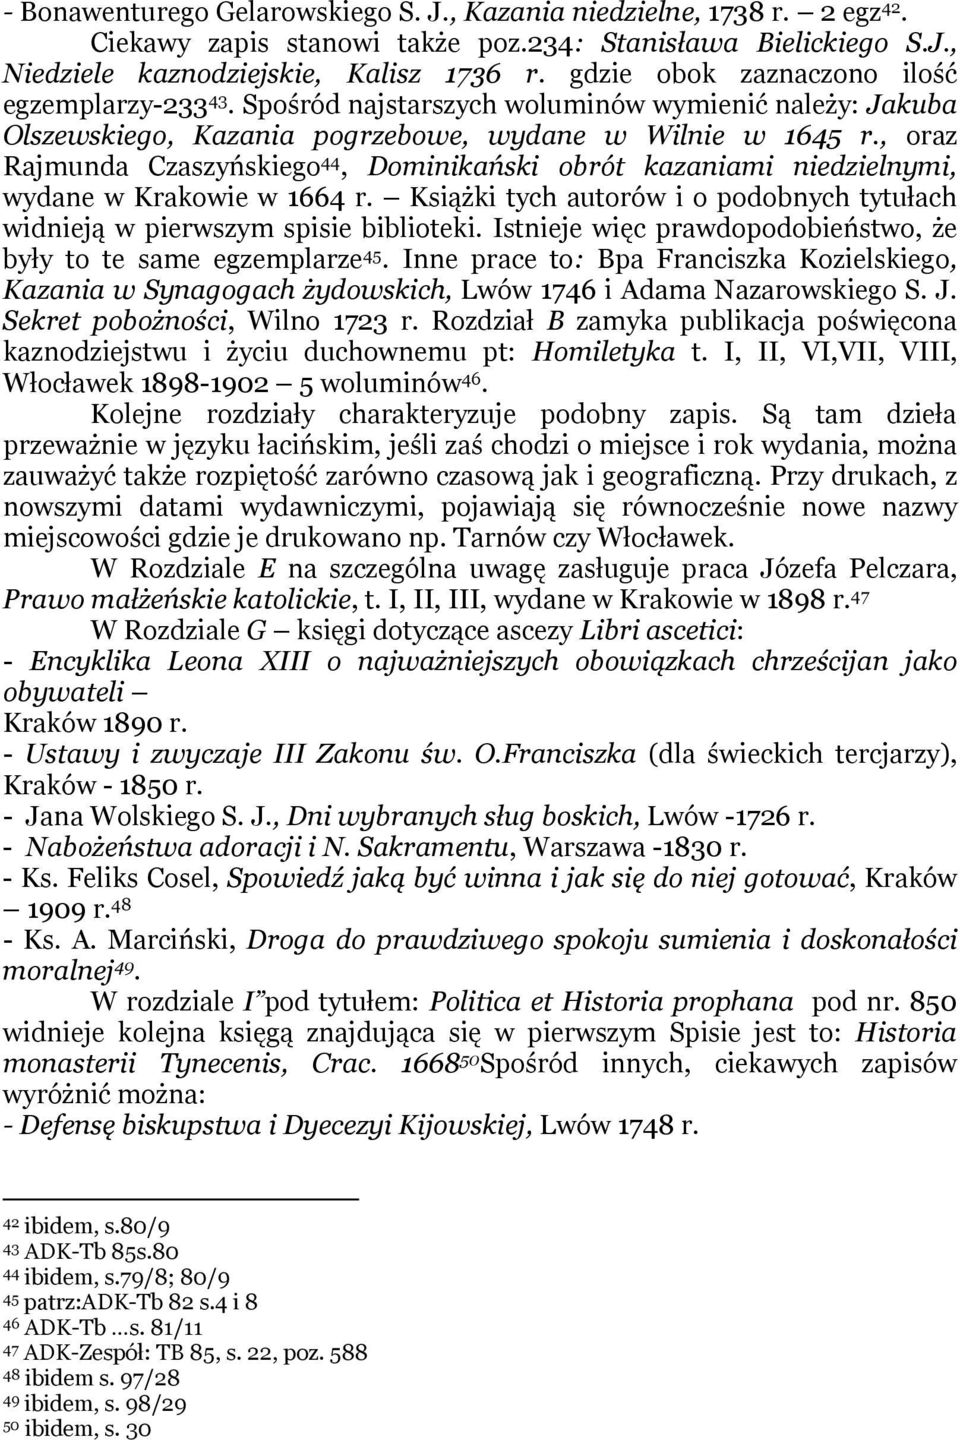 , oraz Rajmunda Czaszyńskiego 44, Dominikański obrót kazaniami niedzielnymi, wydane w Krakowie w 1664 r. Książki tych autorów i o podobnych tytułach widnieją w pierwszym spisie biblioteki.